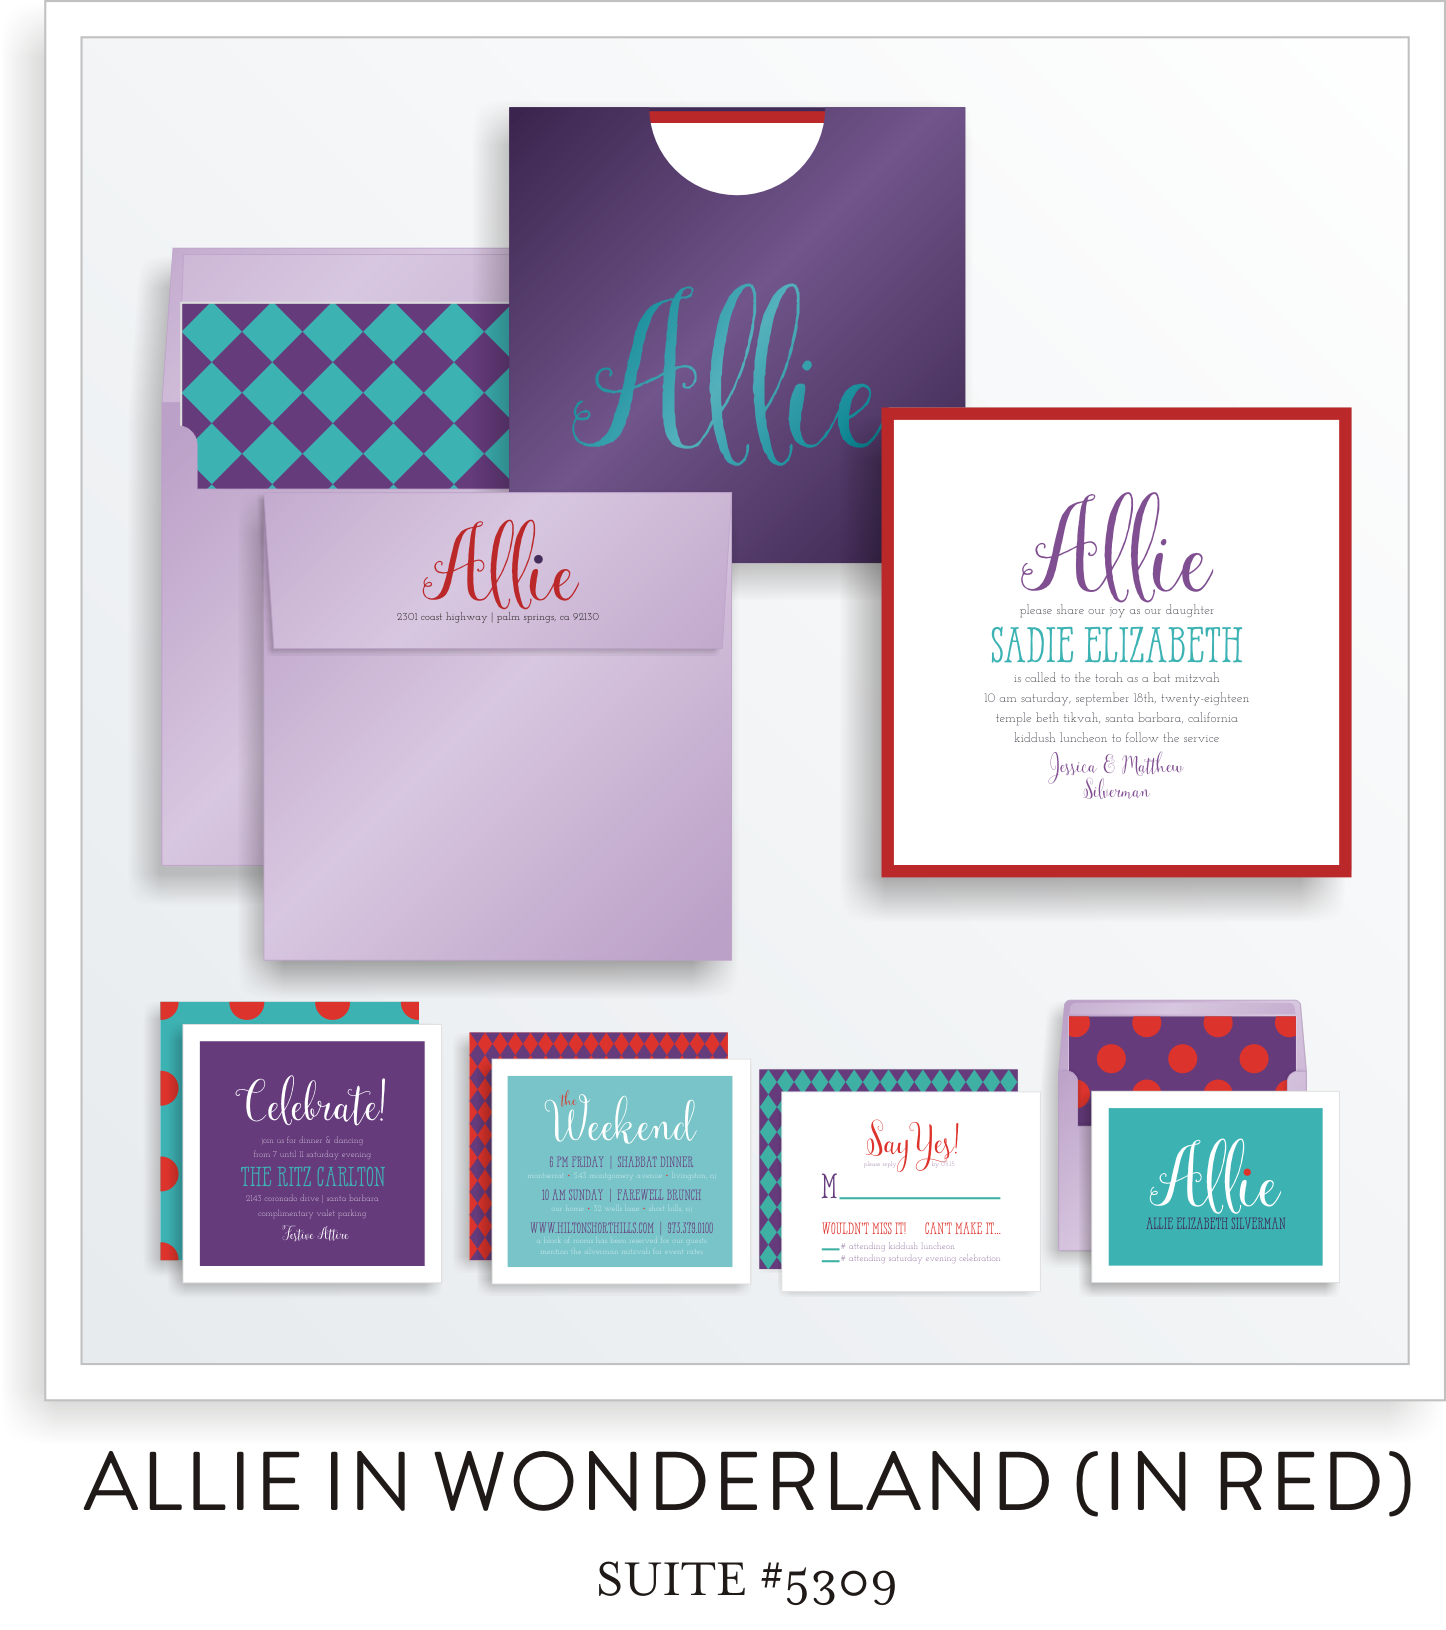 Bat Mitzvah Invitation Suite 5309 - Allie in Wonderland (in red)